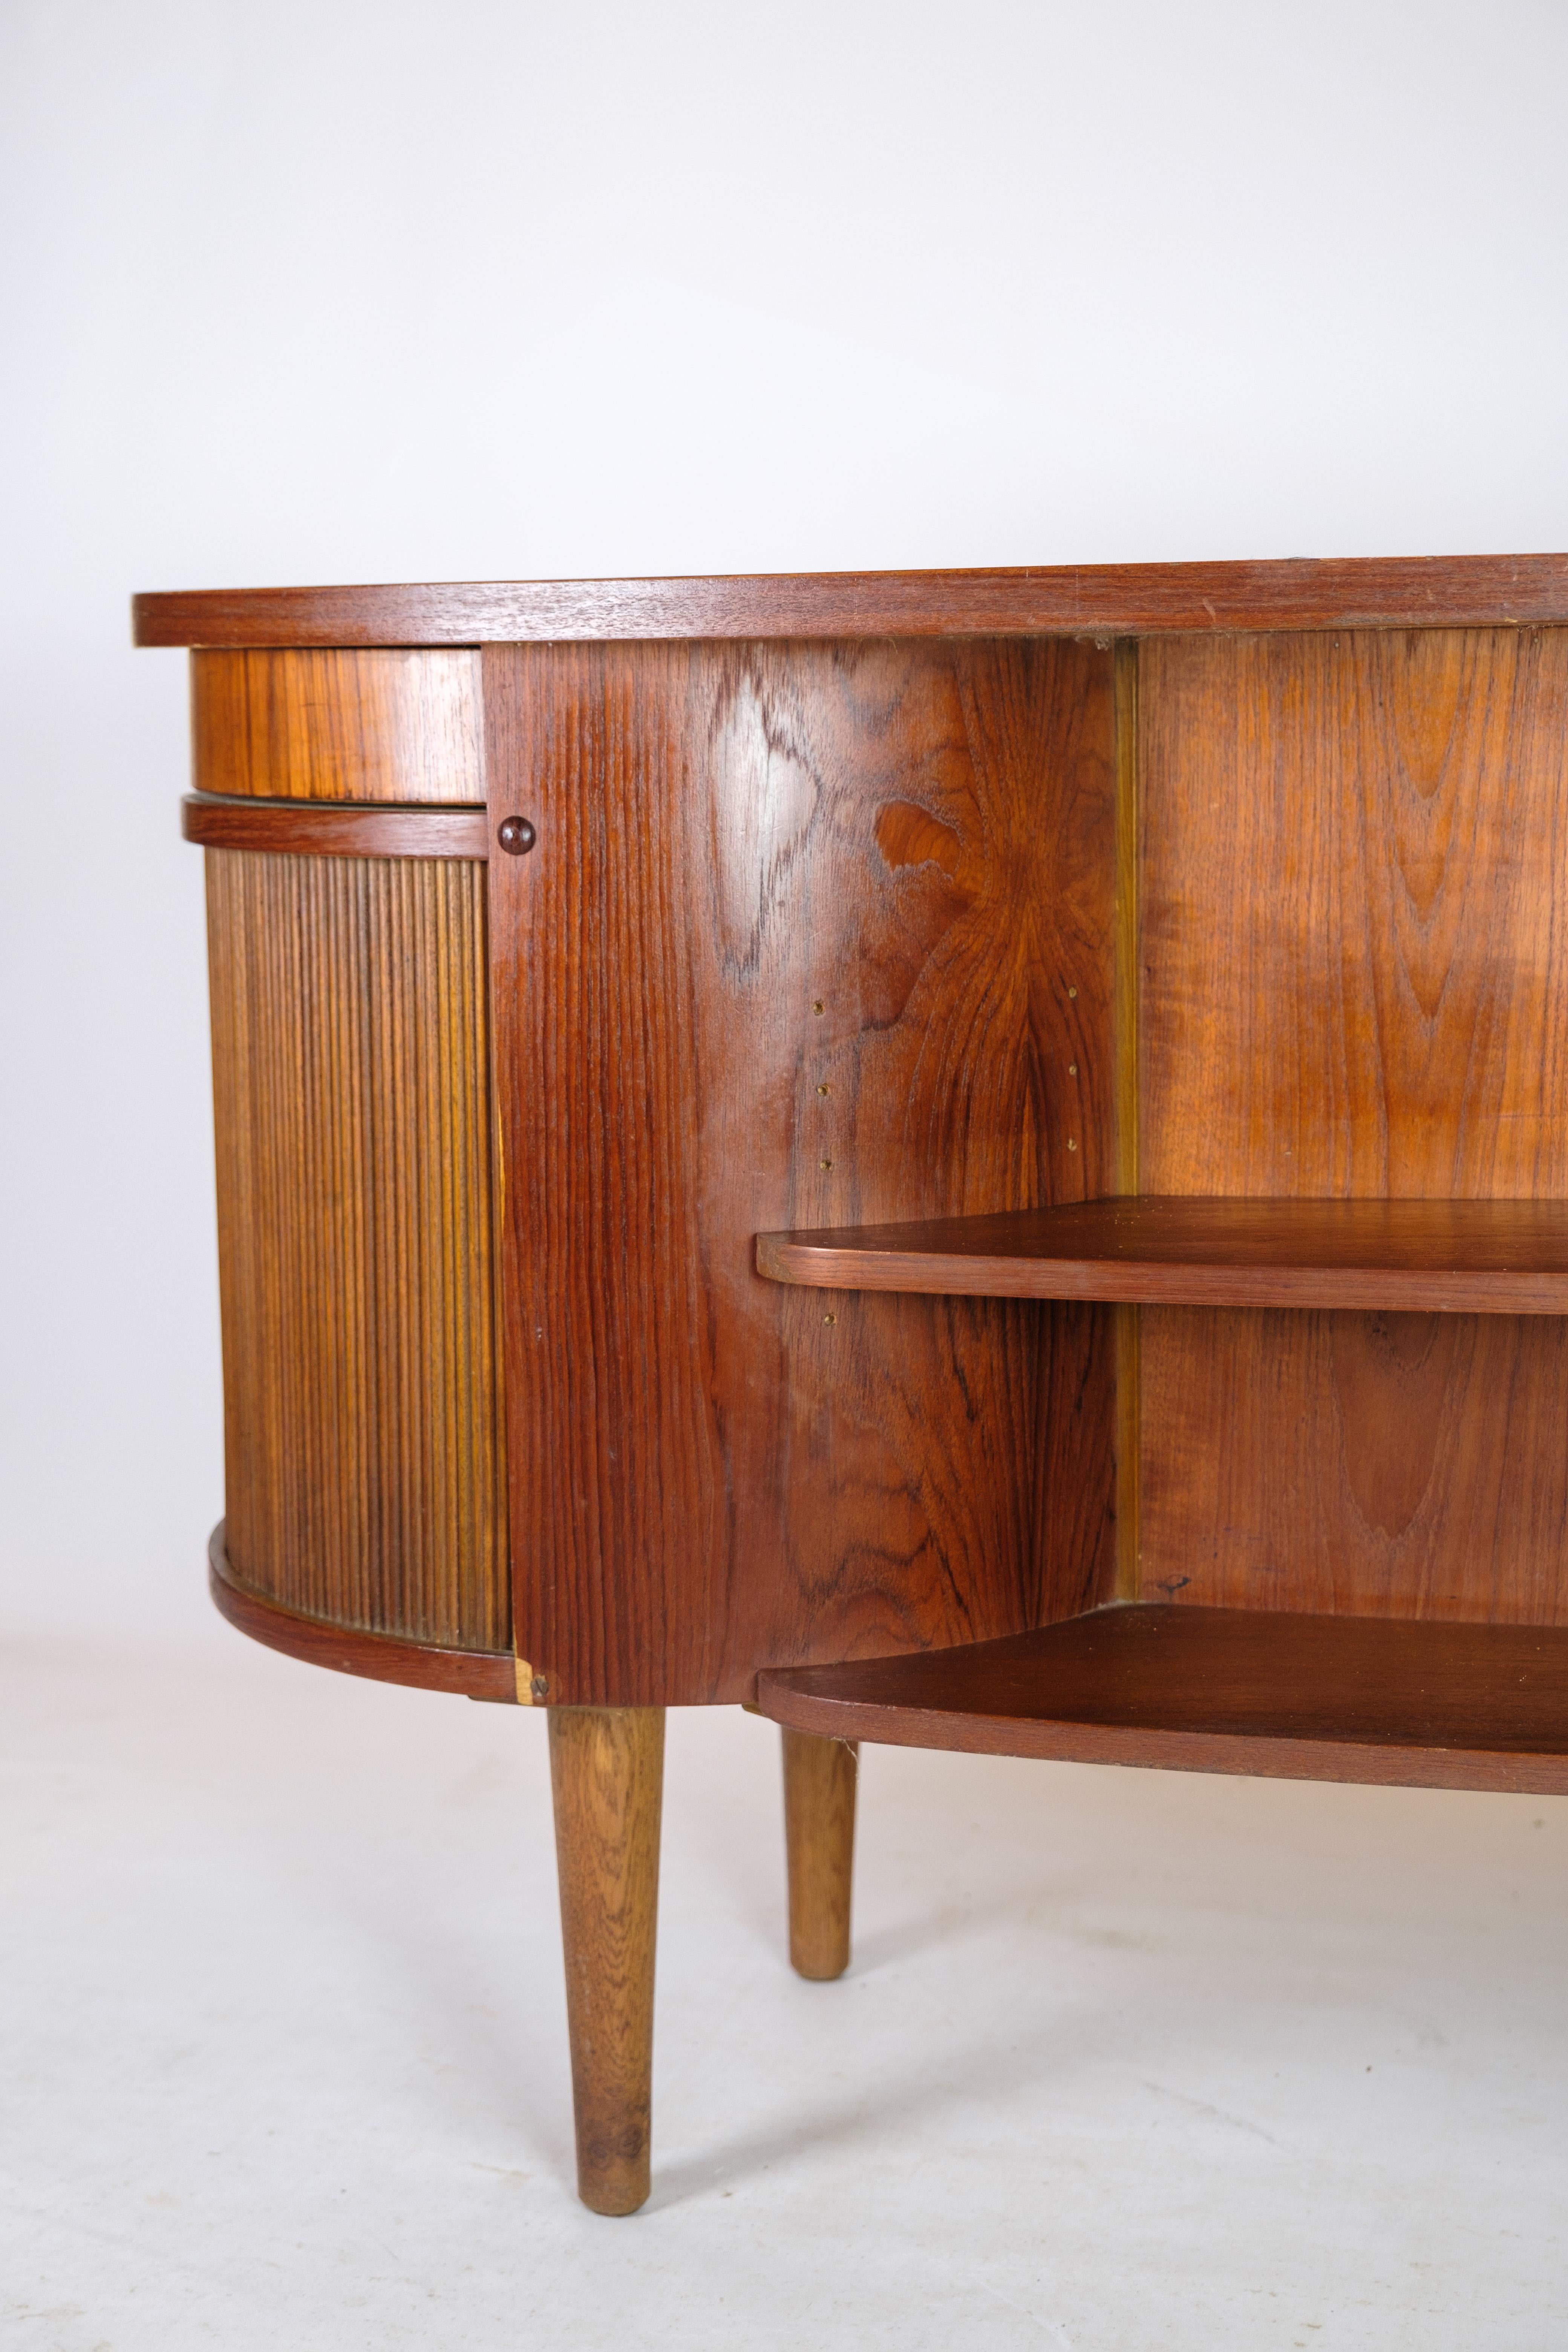 Desk in Teak wood model 54 by Kai Kristiansen and Feldballes furniture from 1954 For Sale 2